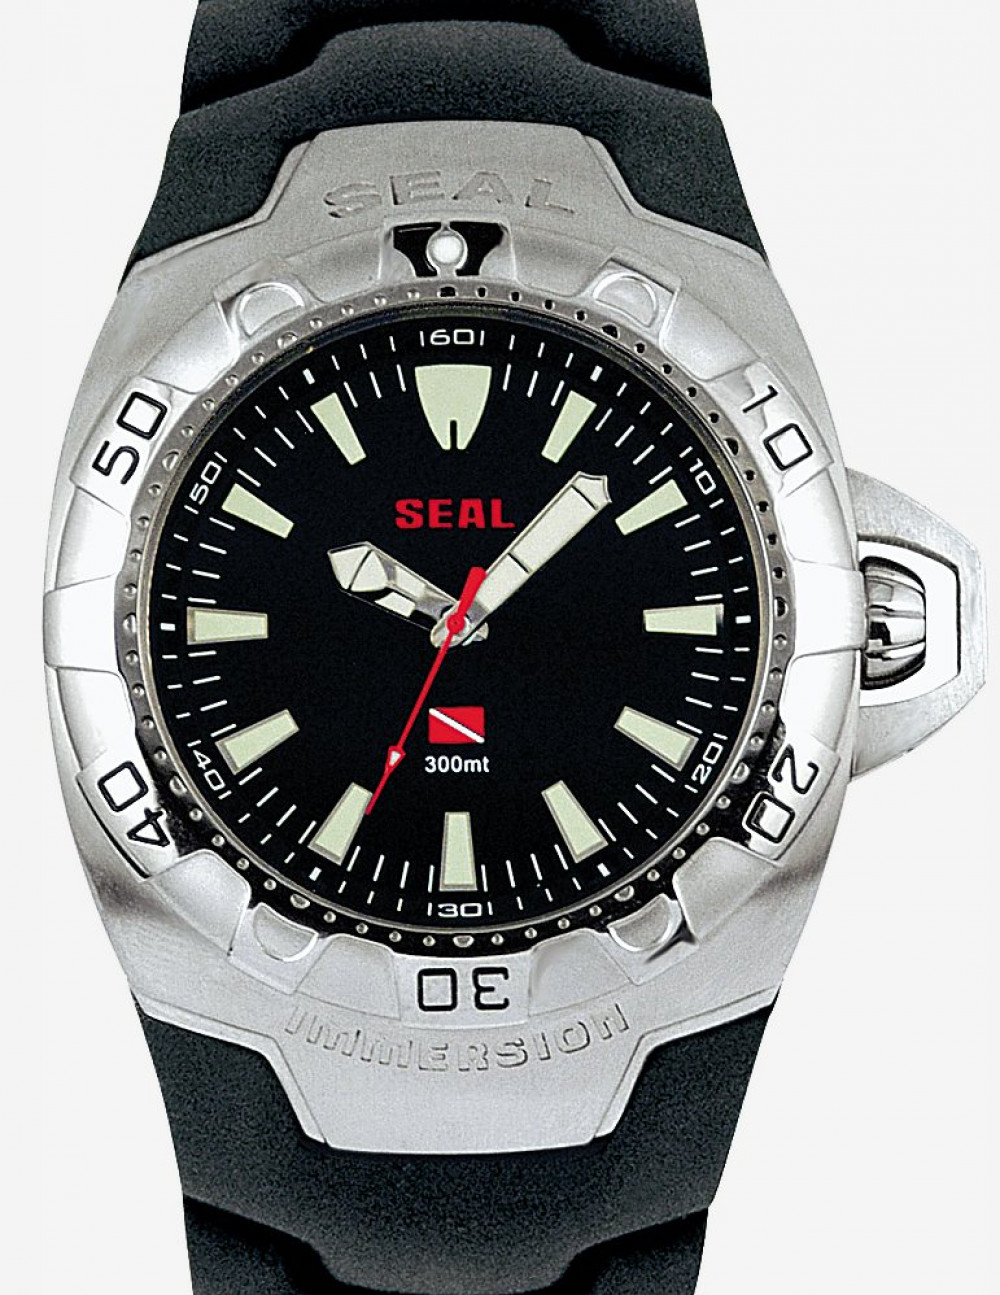 Zegarek firmy Immersion, model Seal